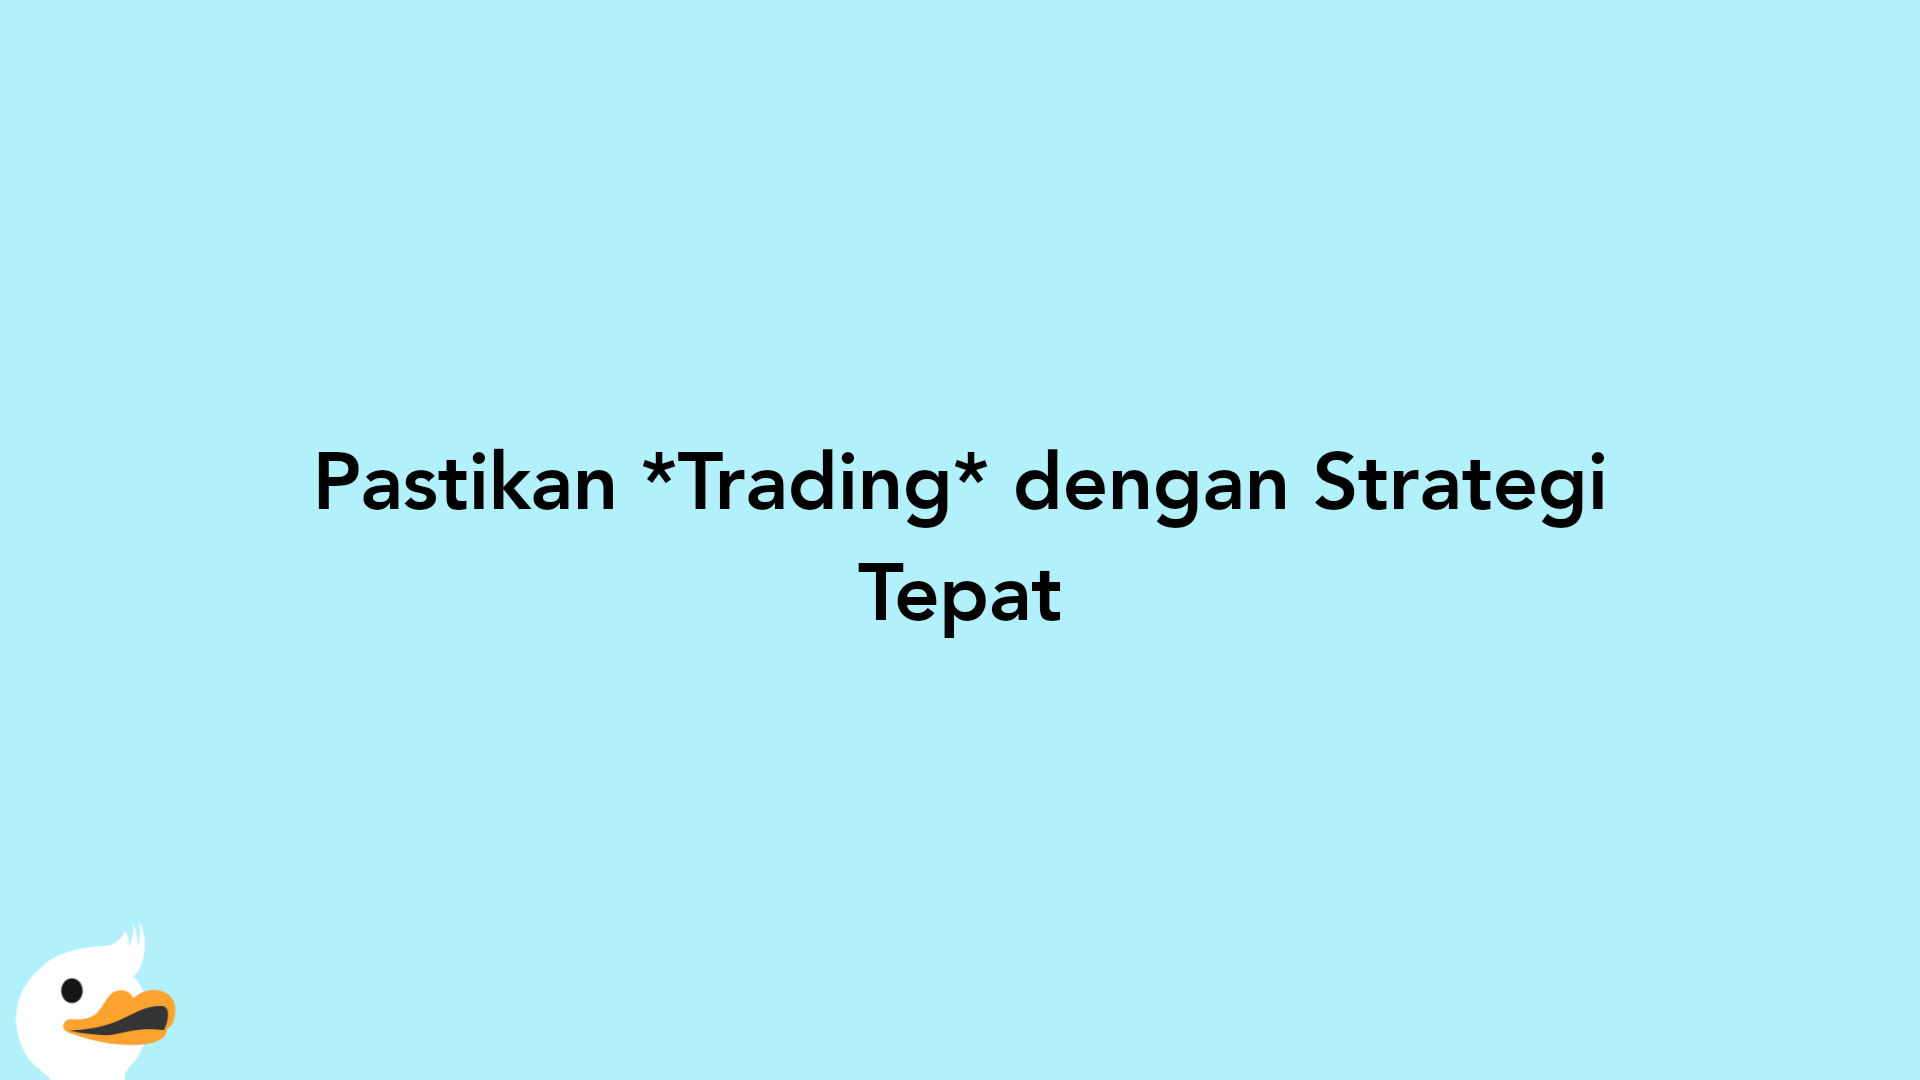 Pastikan Trading dengan Strategi Tepat